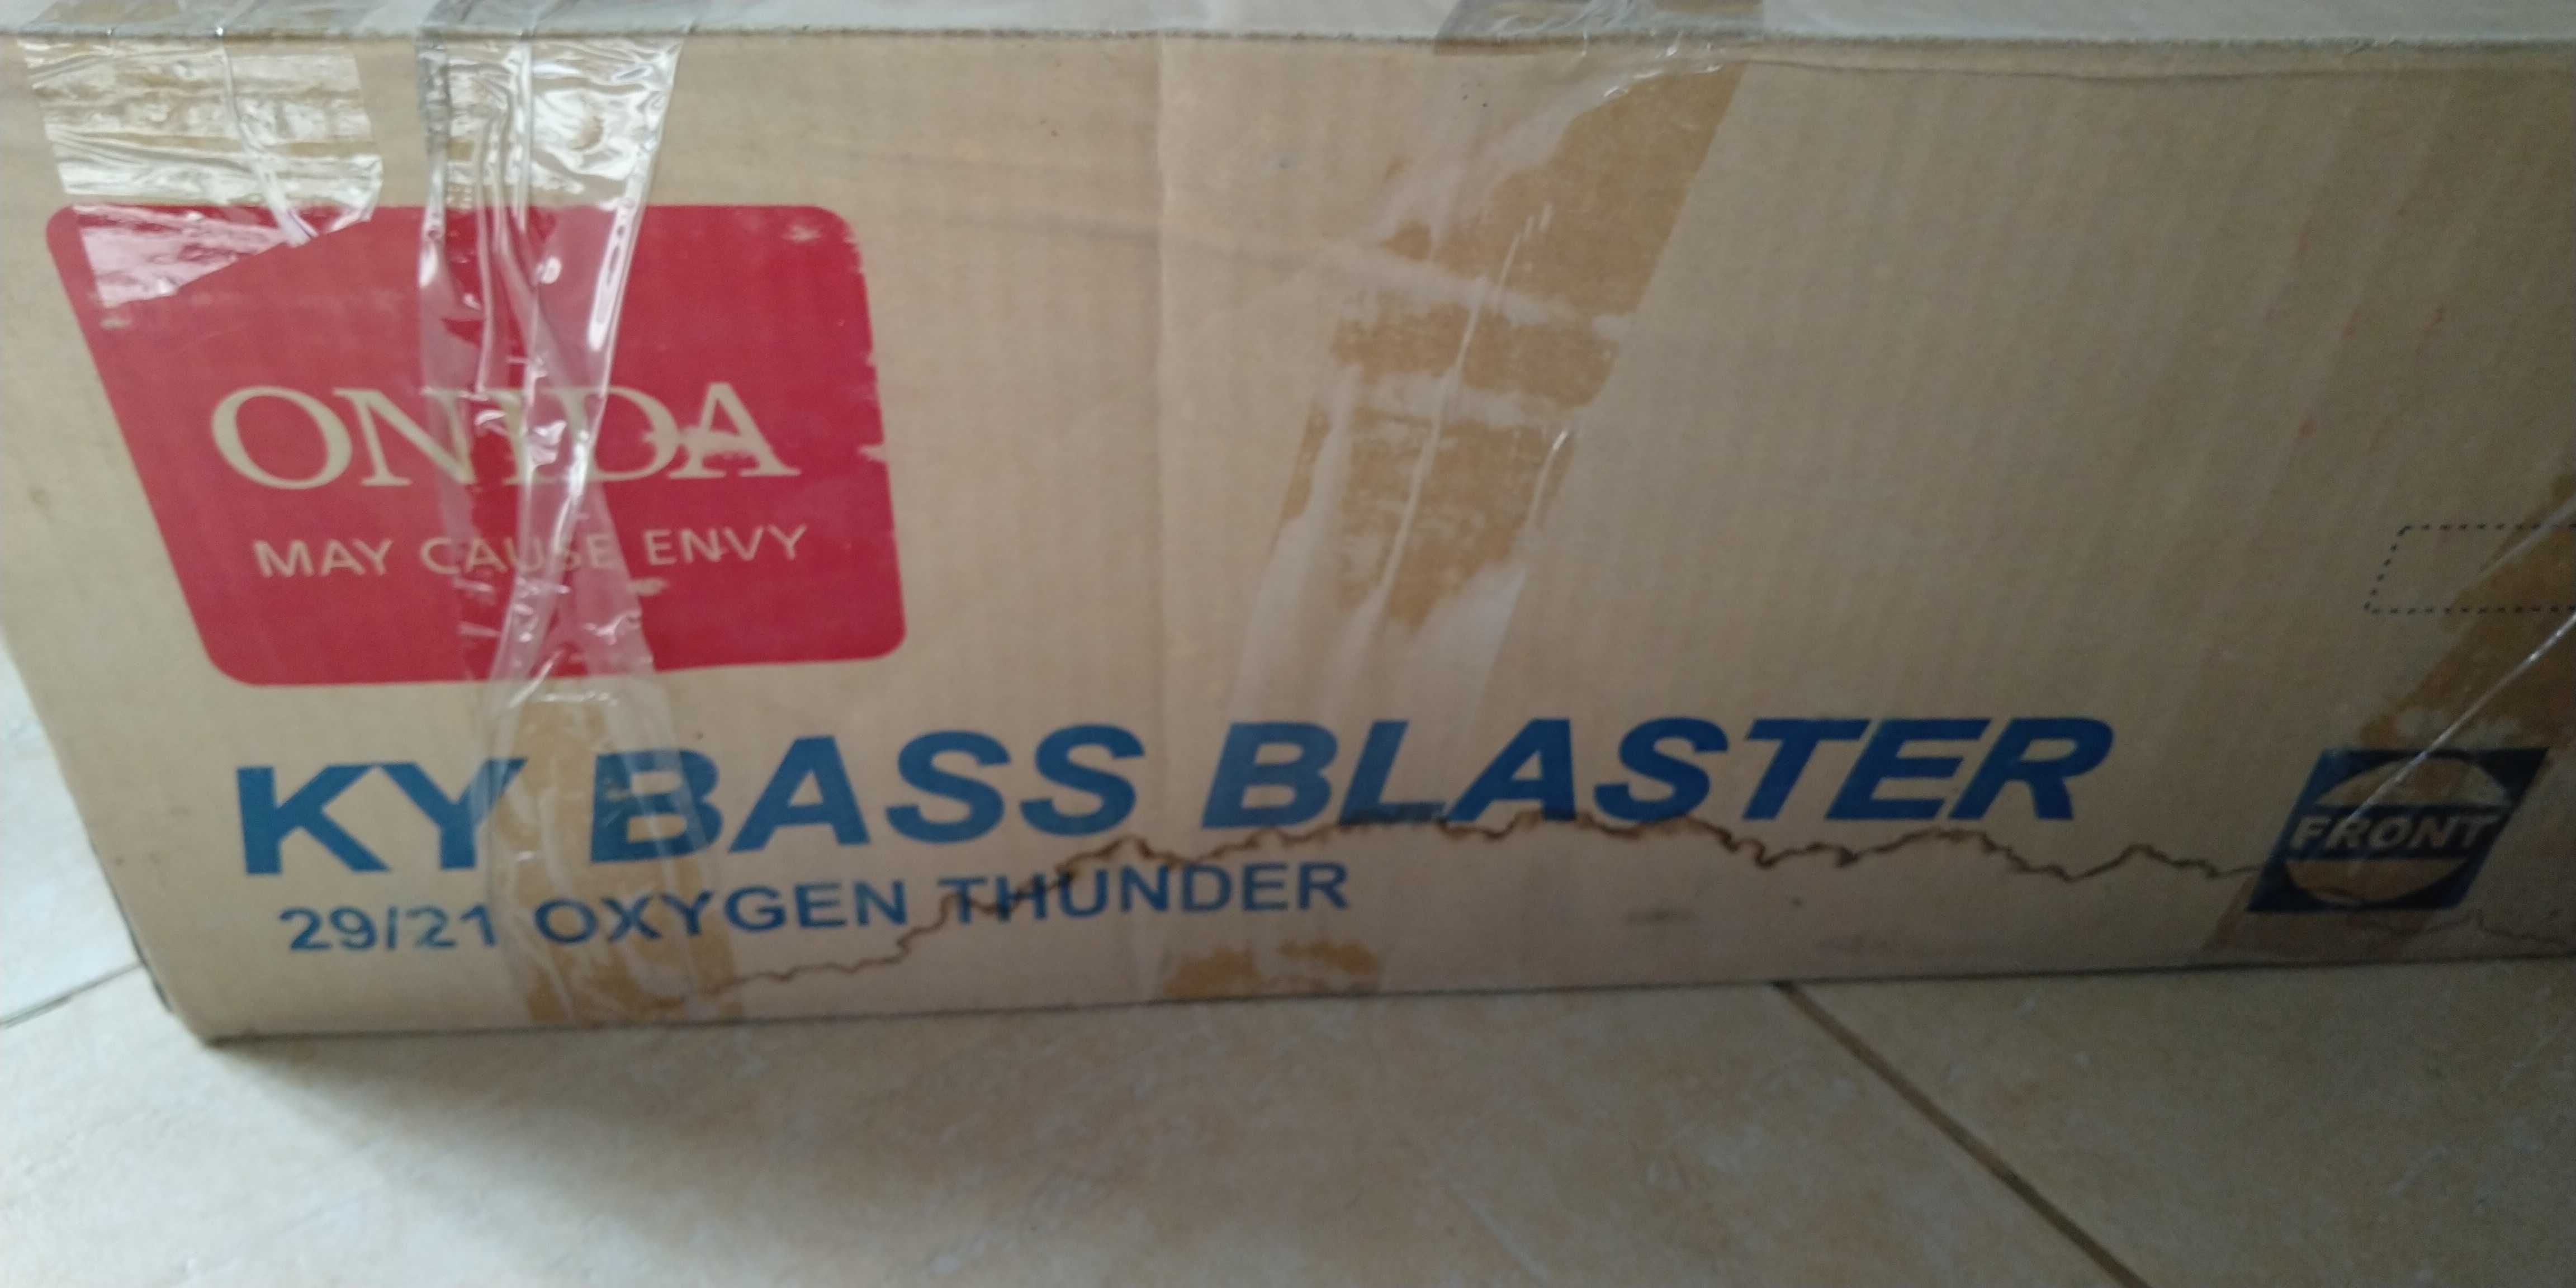 Сабвуфер Onida KY Bass Blaster 29/21